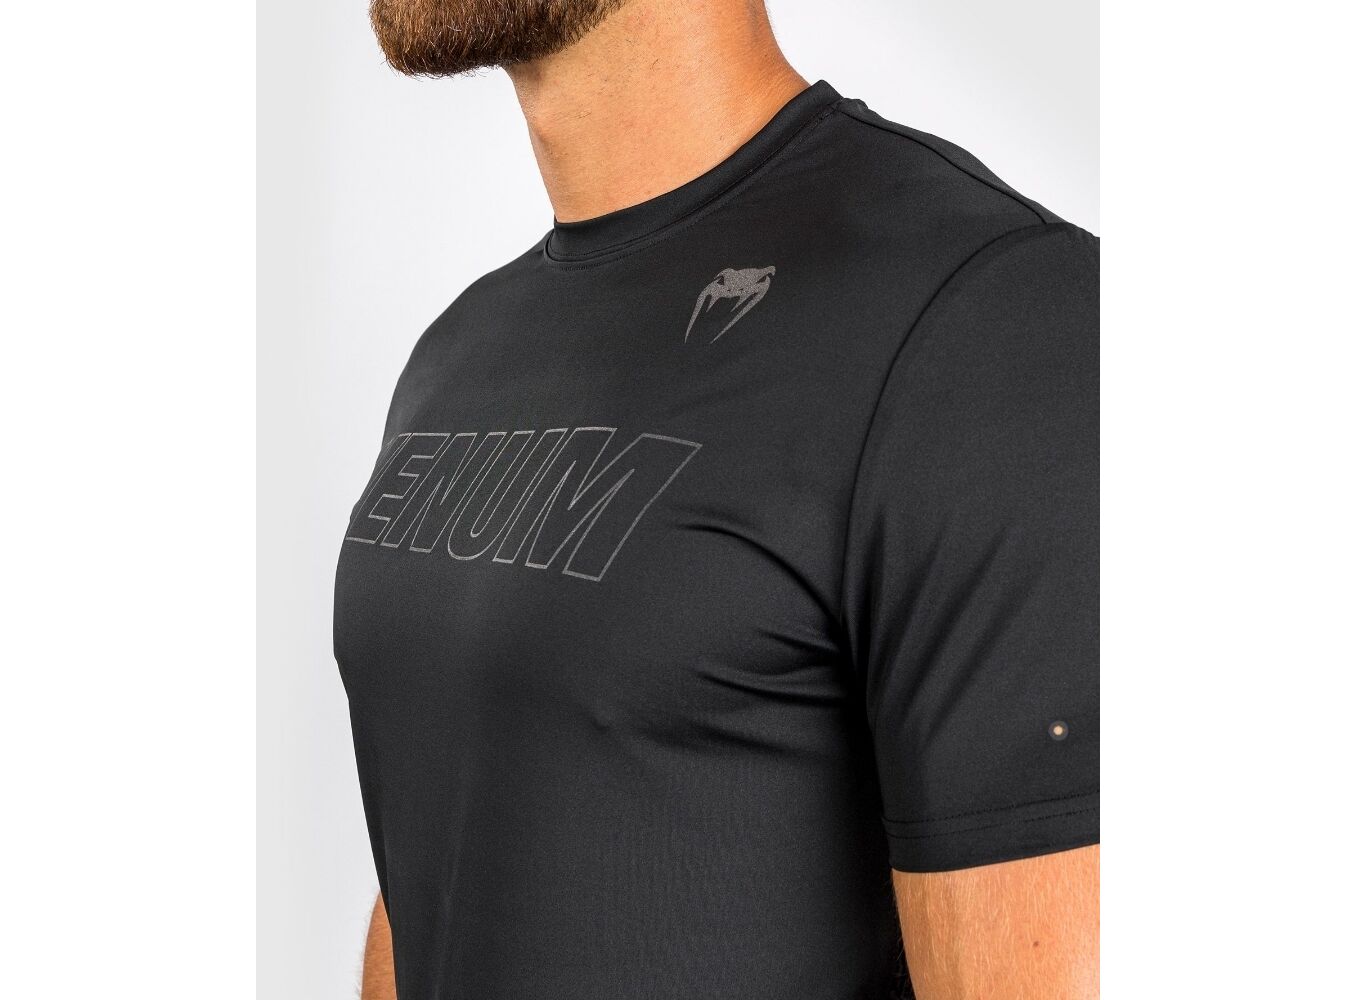 Vêtements :: T-Shirts et Polos :: Dry Tech :: Venum Classic Evo Dry Tech  T-Shirt - Black/White - S - Combat Sport best MMA Shop in Switzerland